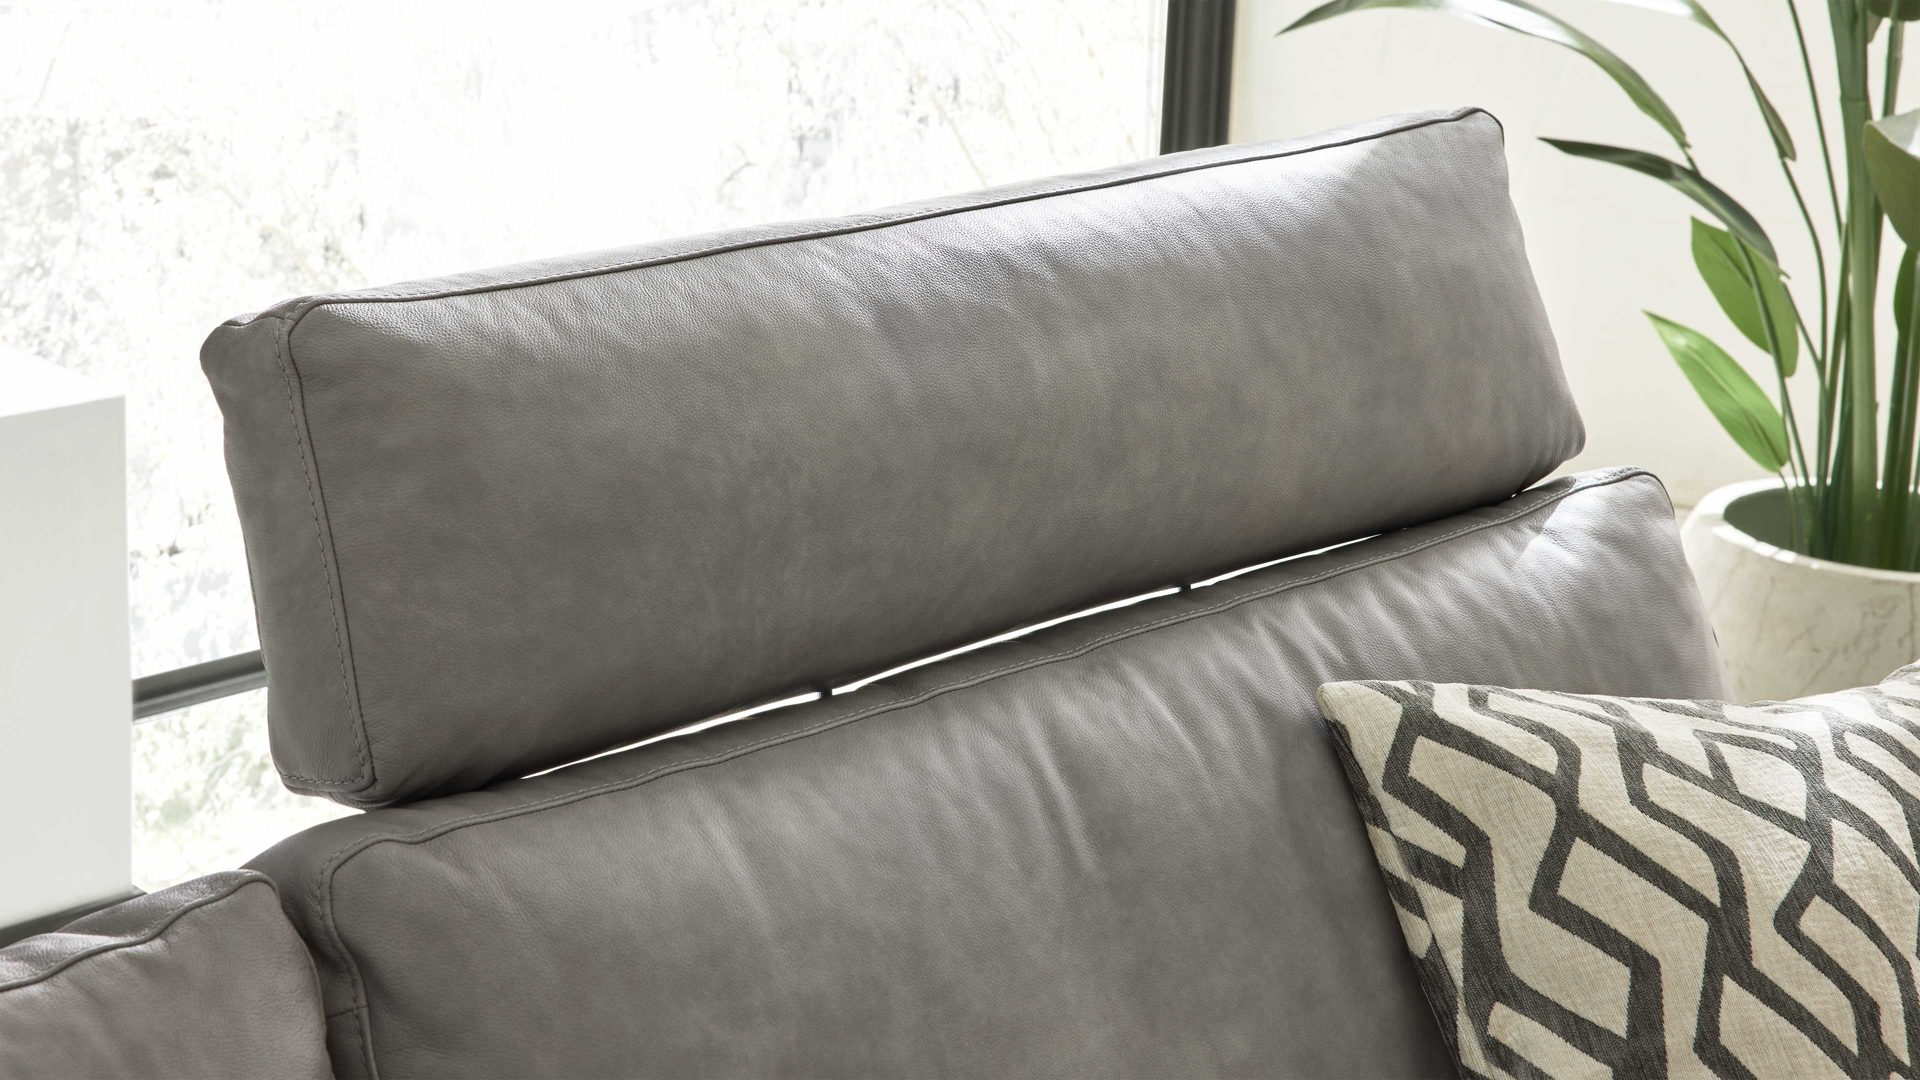 Wohnland Breitwieser , Möbel A-Z, Sofa + Couch, Einzelsofas, Interliving,  Interliving Sofa Serie 4004 - Kopfstütze U70K, hellgraues LongLife-Leder  Z69-22 - Breite ca. 60 cm